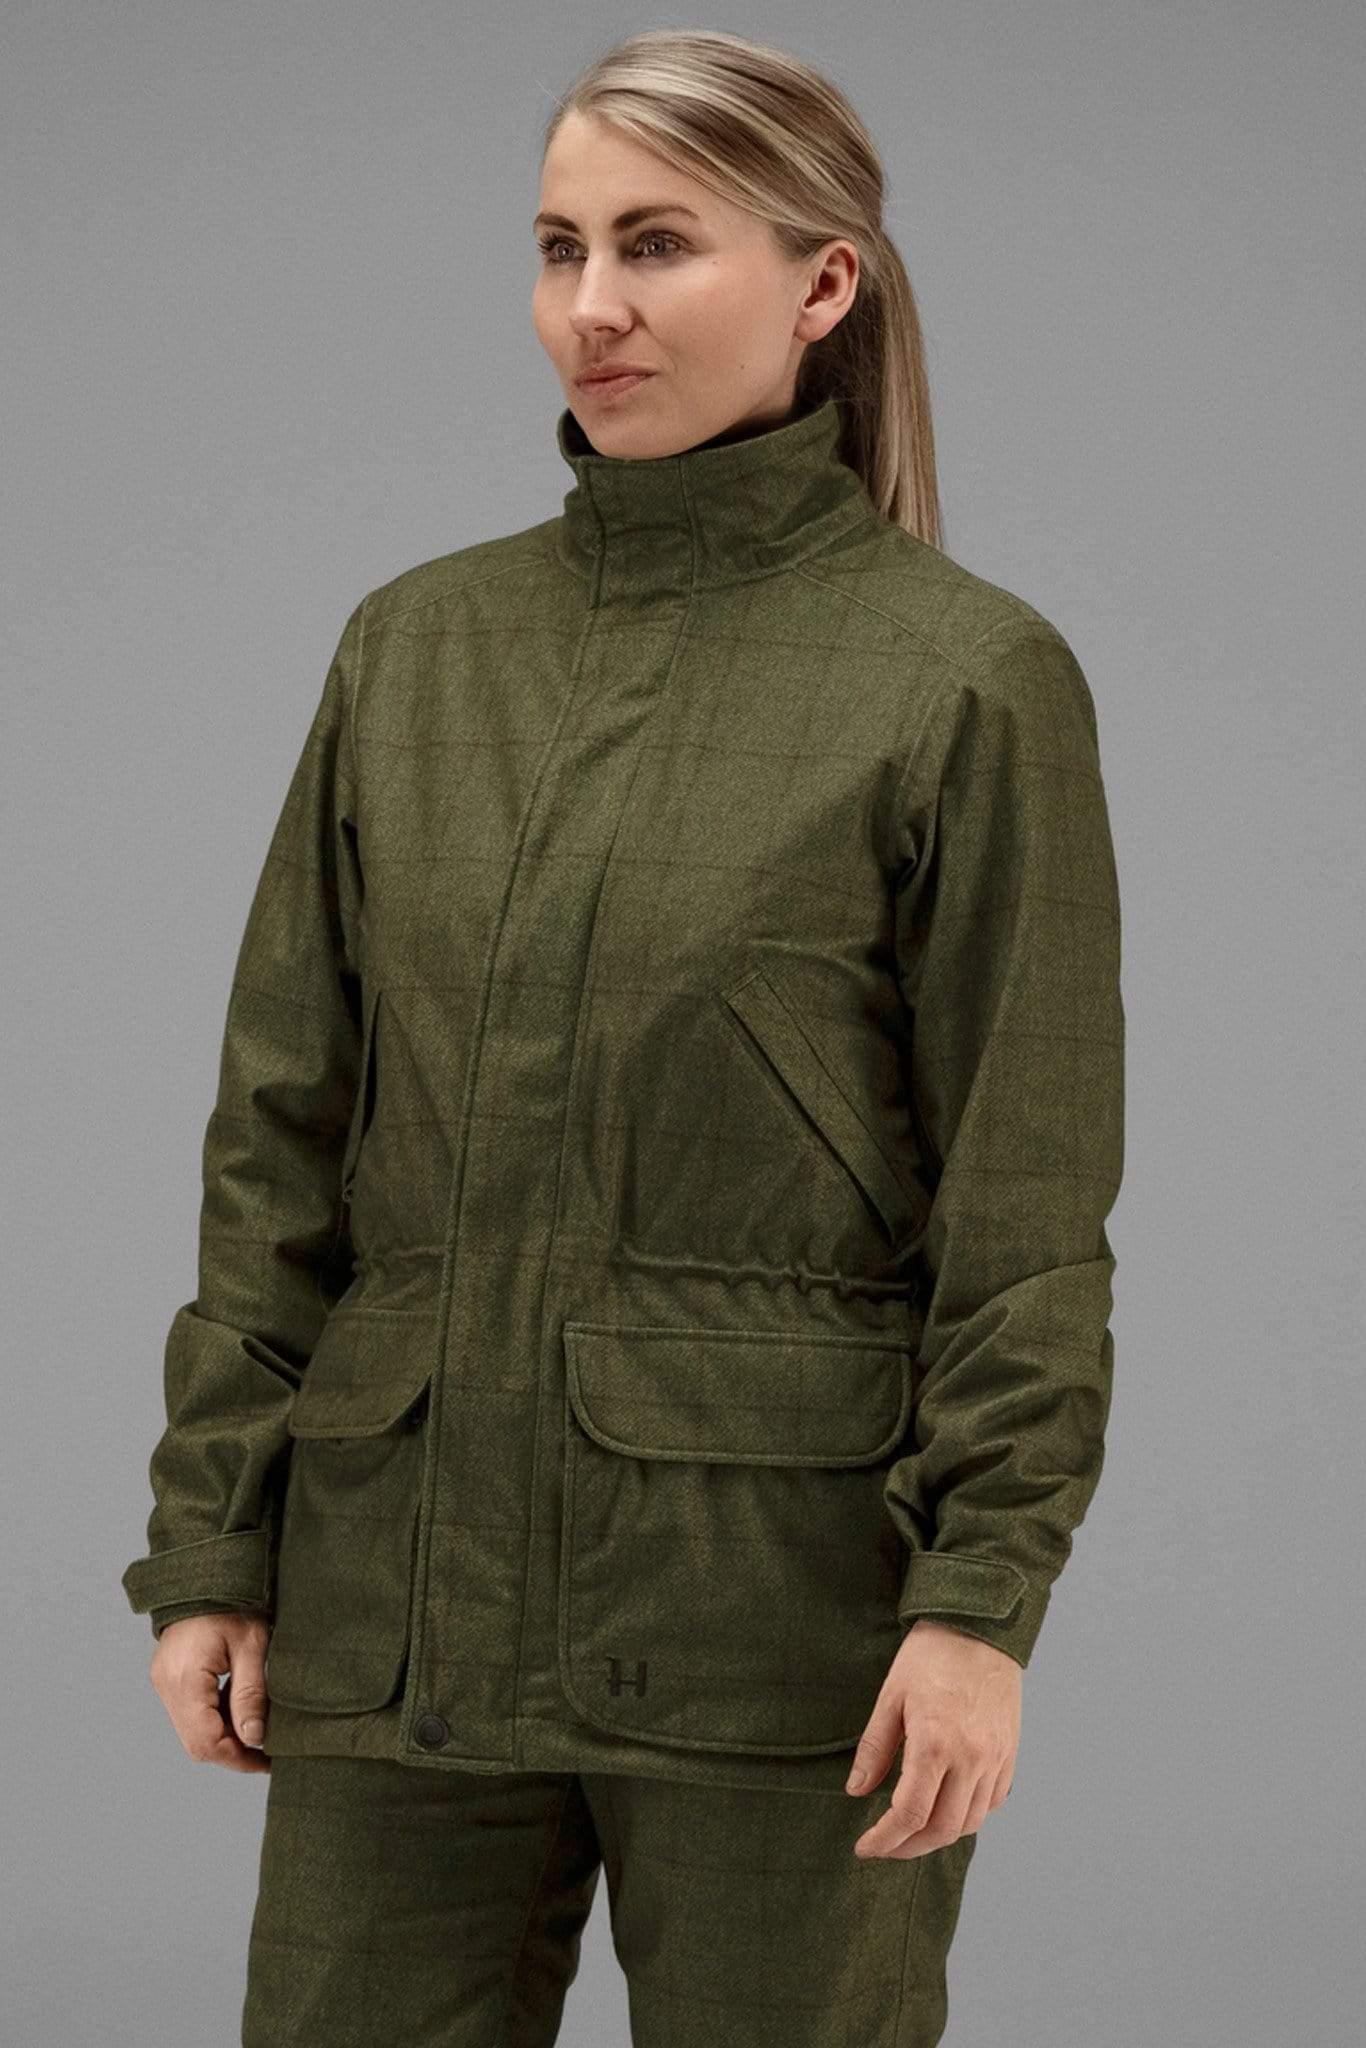 Harkila Technical Coats Harkila Stornoway Ladies Shooting Jacket Technical Tweed Print